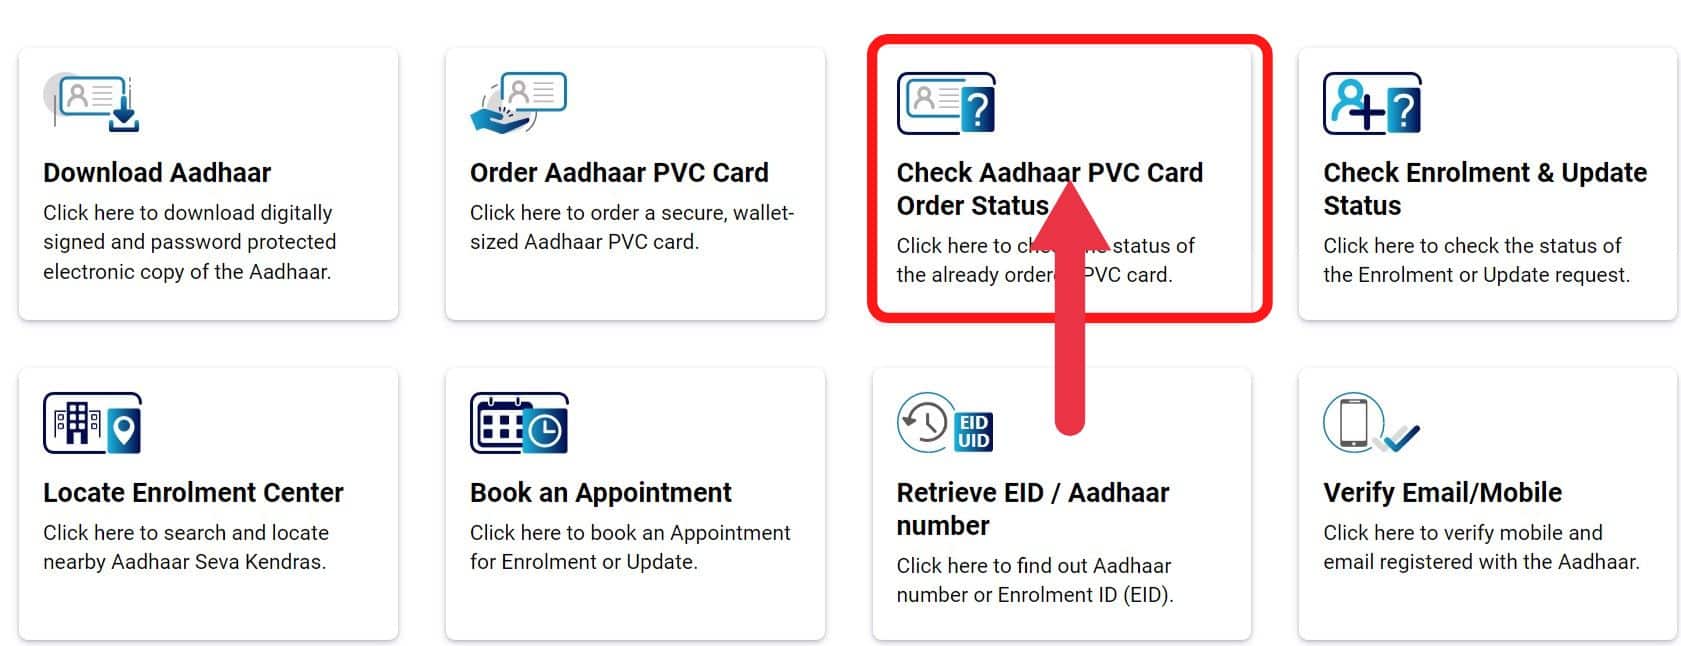 PVC Aadhaar Card Status